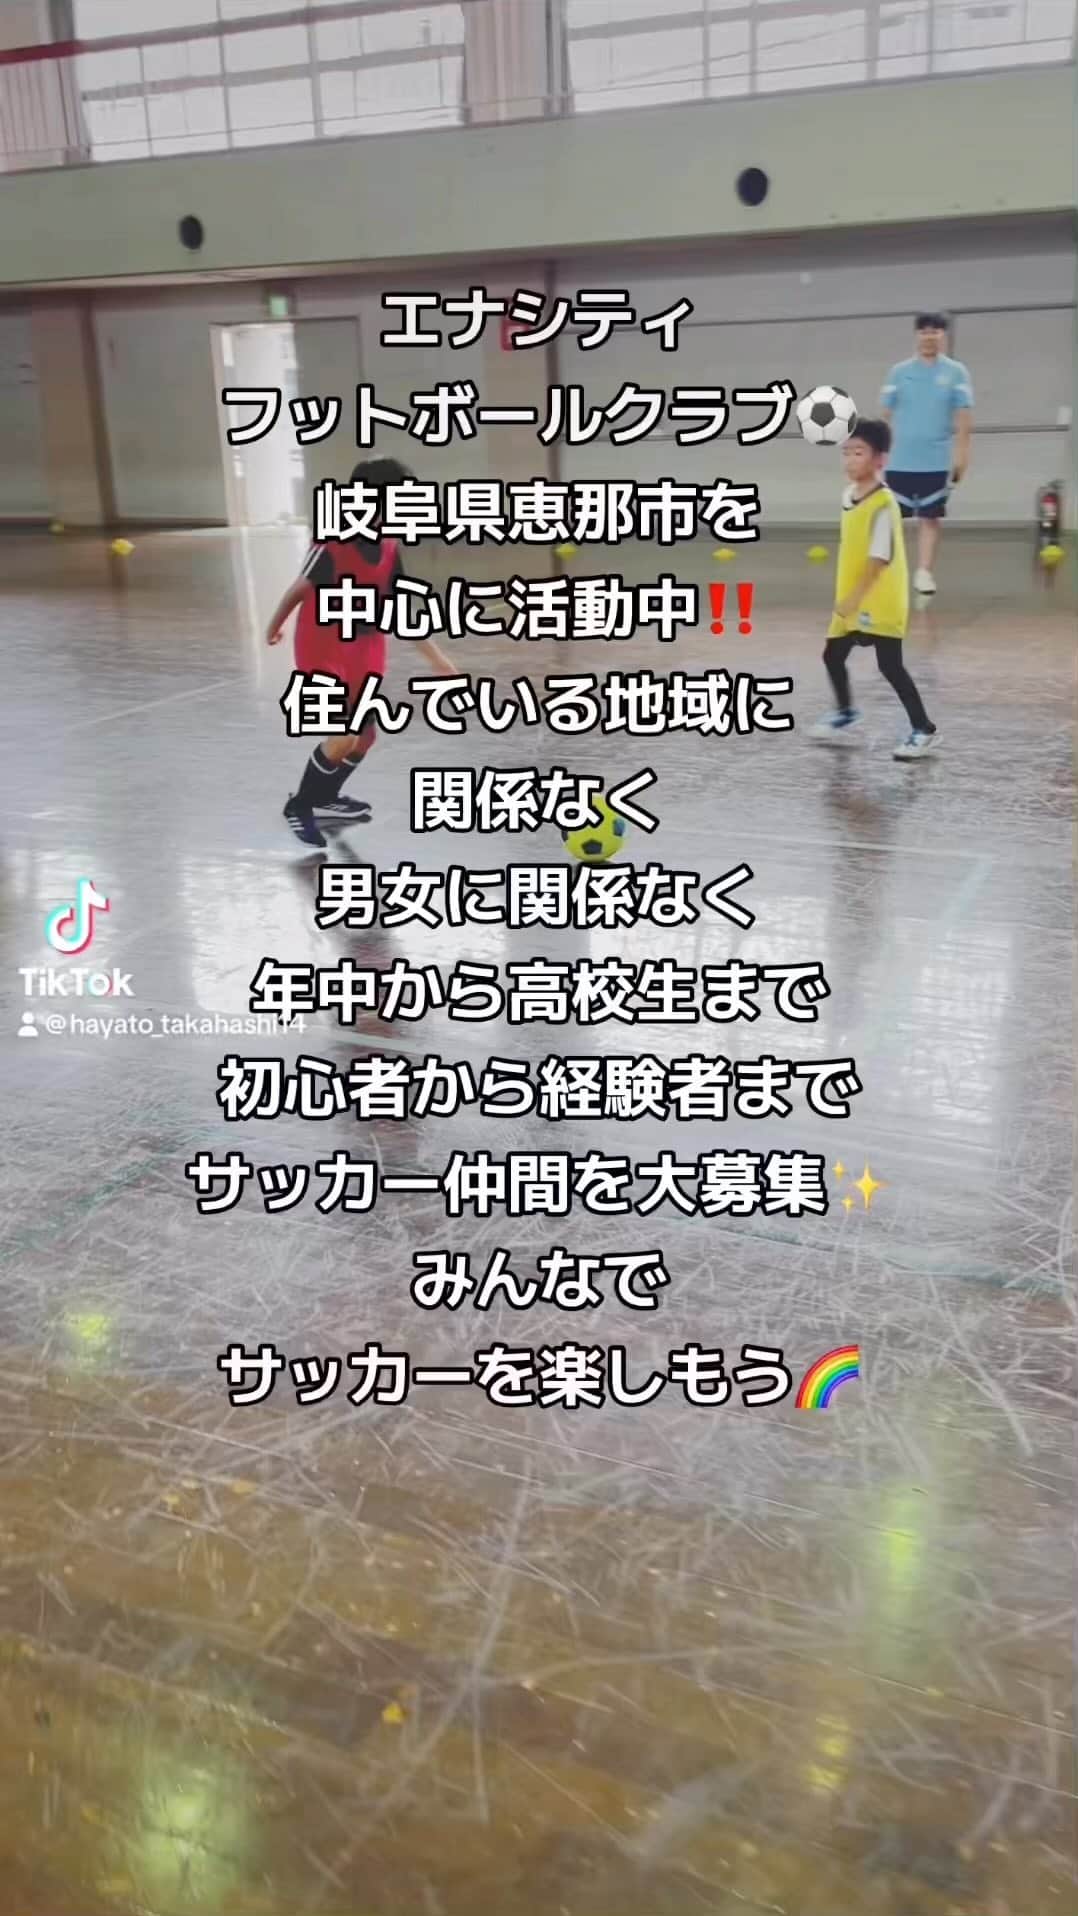 HAYATOのインスタグラム：「ENA CITY FOOTBALL CLUBは 岐阜県恵那市を中心に活動しています🌈  ・住んでいる地域に関係なく ・男女に関係なく ・年中から高校生まで ・初心者から経験者まで  のサッカー仲間を募集しています⚽️  「運動が苦手だから楽しくやりたい」 「ゲームやスマホの利用時間を減らしたい」 「高校までガチではなくゆるく楽しく続けたい」 「本気でレベルアップしたい」  などご希望にお応えします✨  『みんなでサッカーを楽しもう‼️』  お問い合わせはDMまで‼️  #enacitysportsclub #enacityfootballclub #enacitydanceclub #funkybabes #ファンキーベイブス #ダンスポ #ibis知的障害者サッカークラブ #恵那サッカーc級ライセンスコーチ #恵那フットサルc級ライセンスコーチ #恵那サッカー東濃トレセンコーチ #恵那初級パラスポーツ指導員 #恵那スポーツ #恵那サッカー #恵那ダンス #恵那ダンスポ #恵那フットサル #恵那サッカーダンス #恵那サッカースクール #恵那サッカー部 #恵那サッカー知的障害者 #瑞浪サッカー #瑞浪フットサル #瑞浪サッカー知的障害者 #中津川サッカー #中津川フットサル #中津川サッカー知的障害者 #スポーツができる身体作り #恵那を盛り上げたい  #みんなでサッカーをはじめよう #みんなでサッカーを楽しもう」